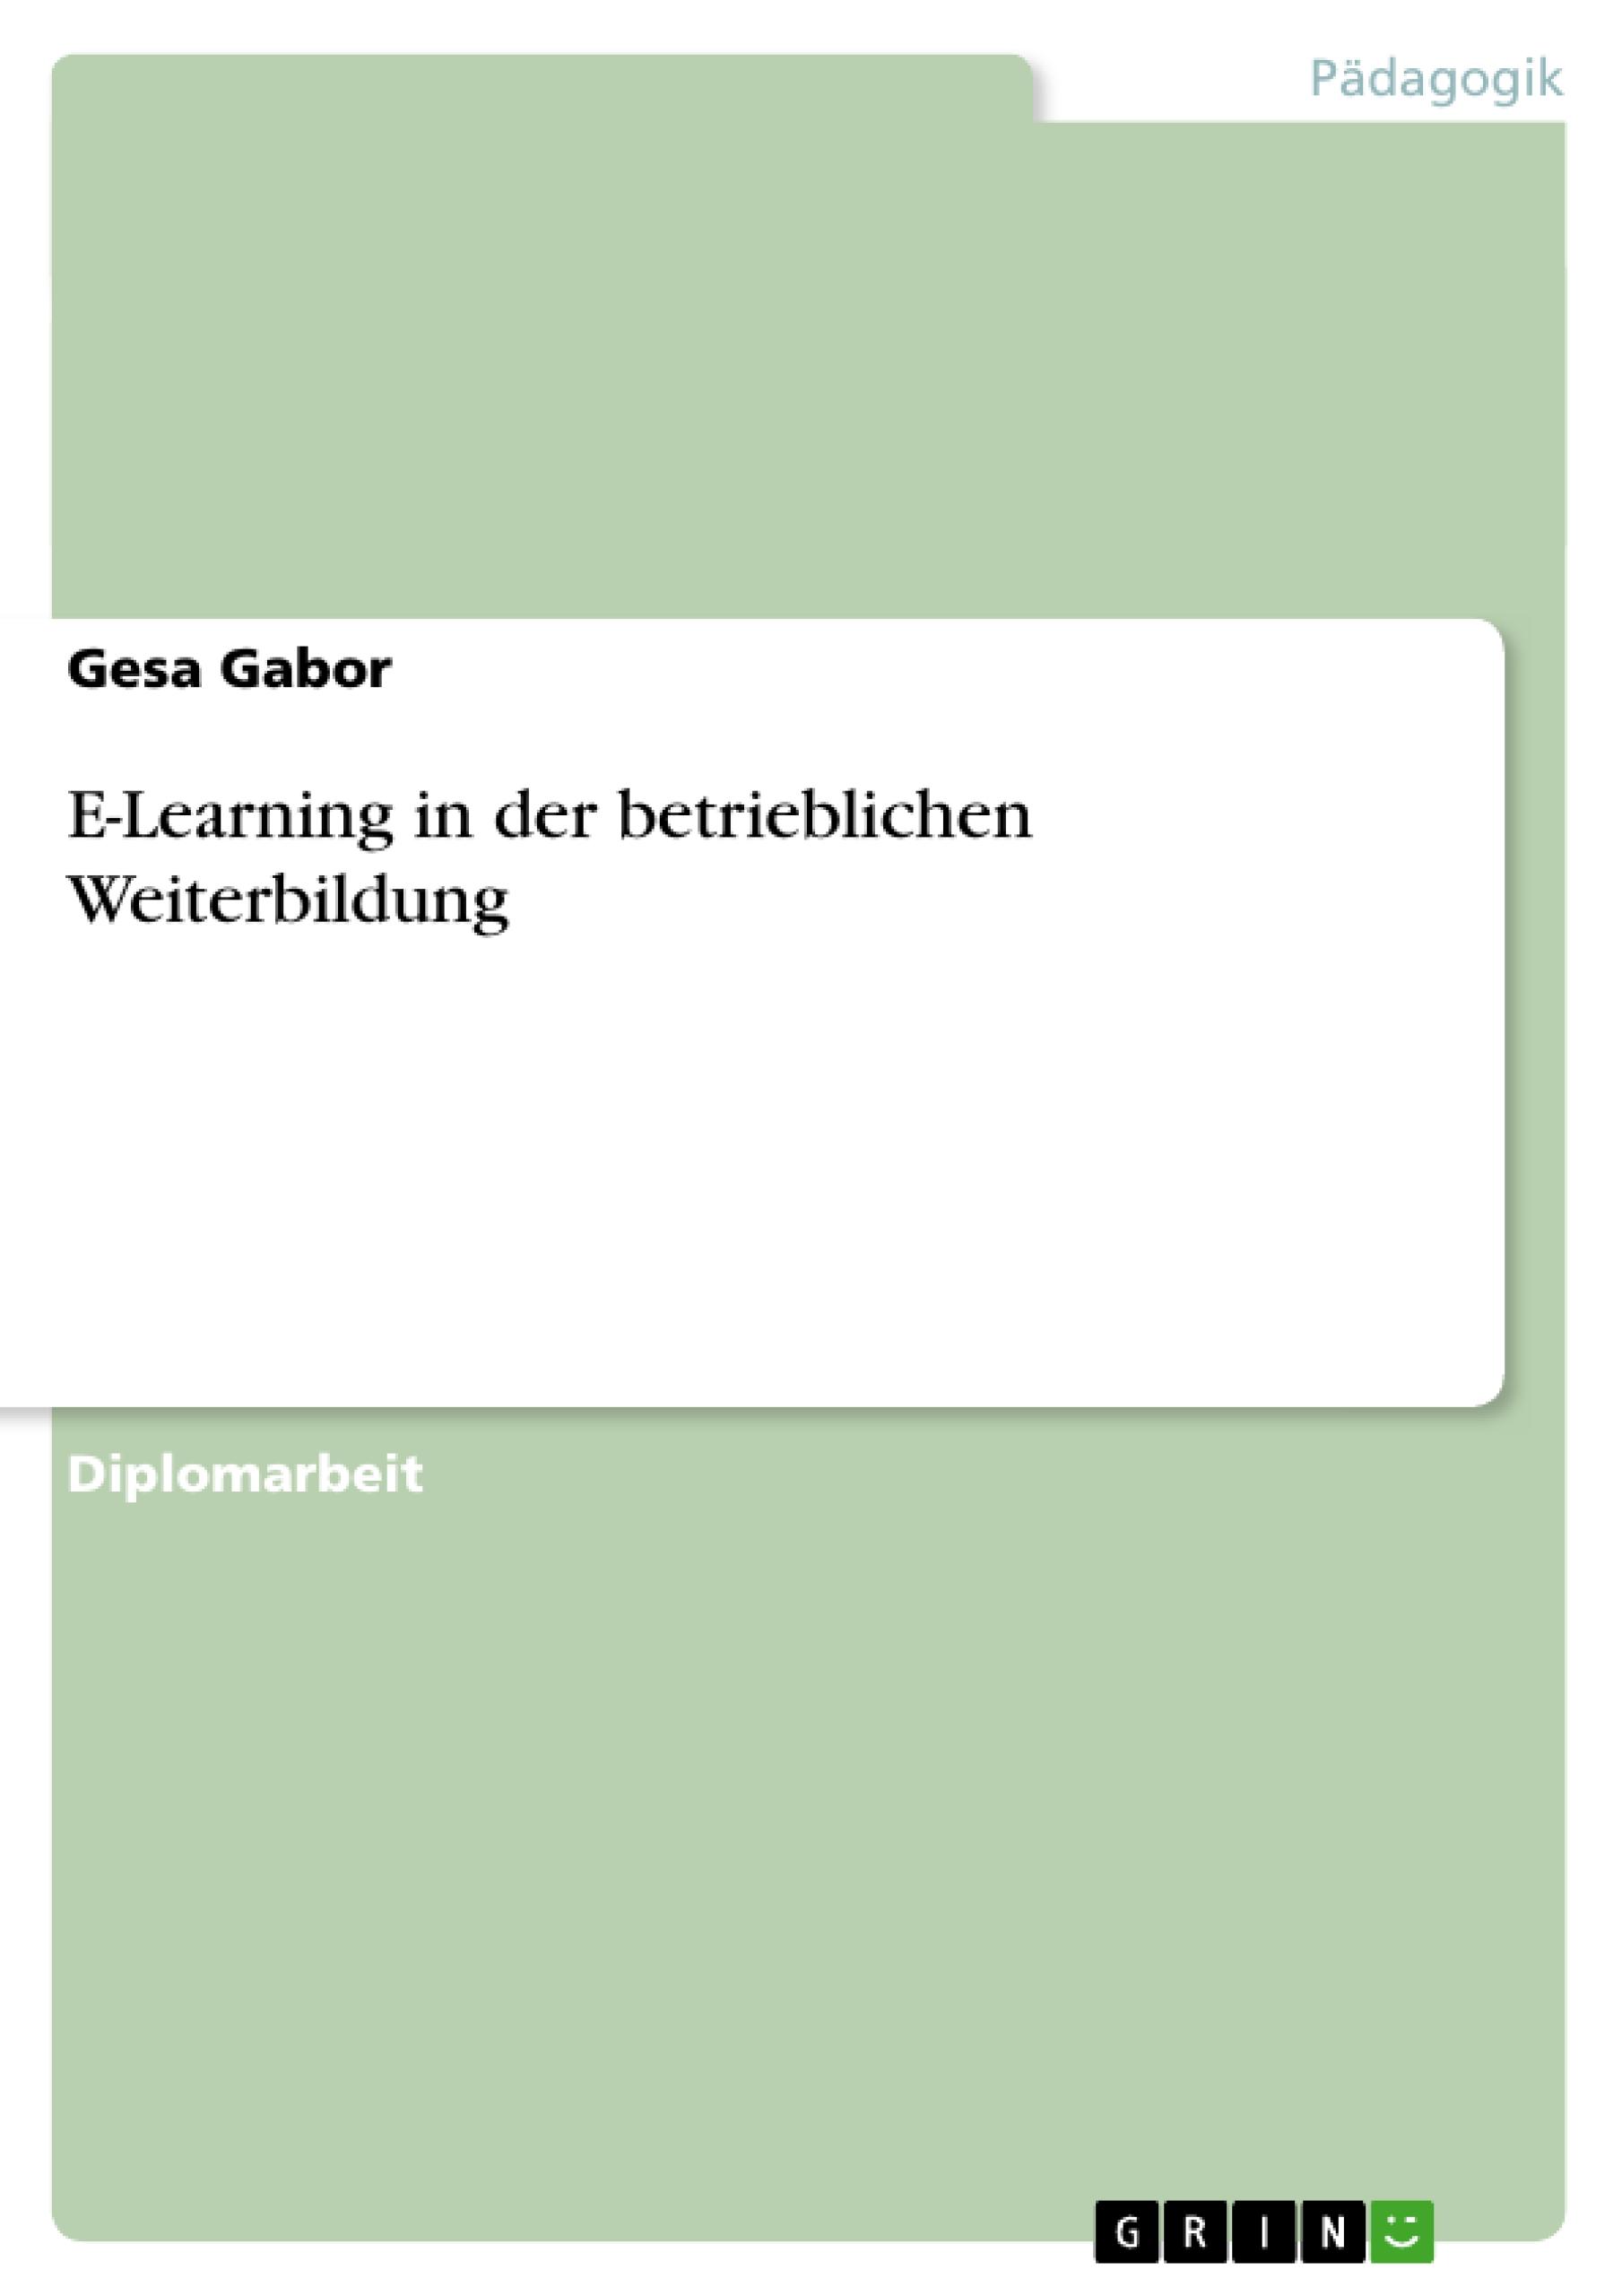 Moeglichkeiten und Grenzen von E-Learning in der betrieblichen Weiterbildung - Gabor, Gesa